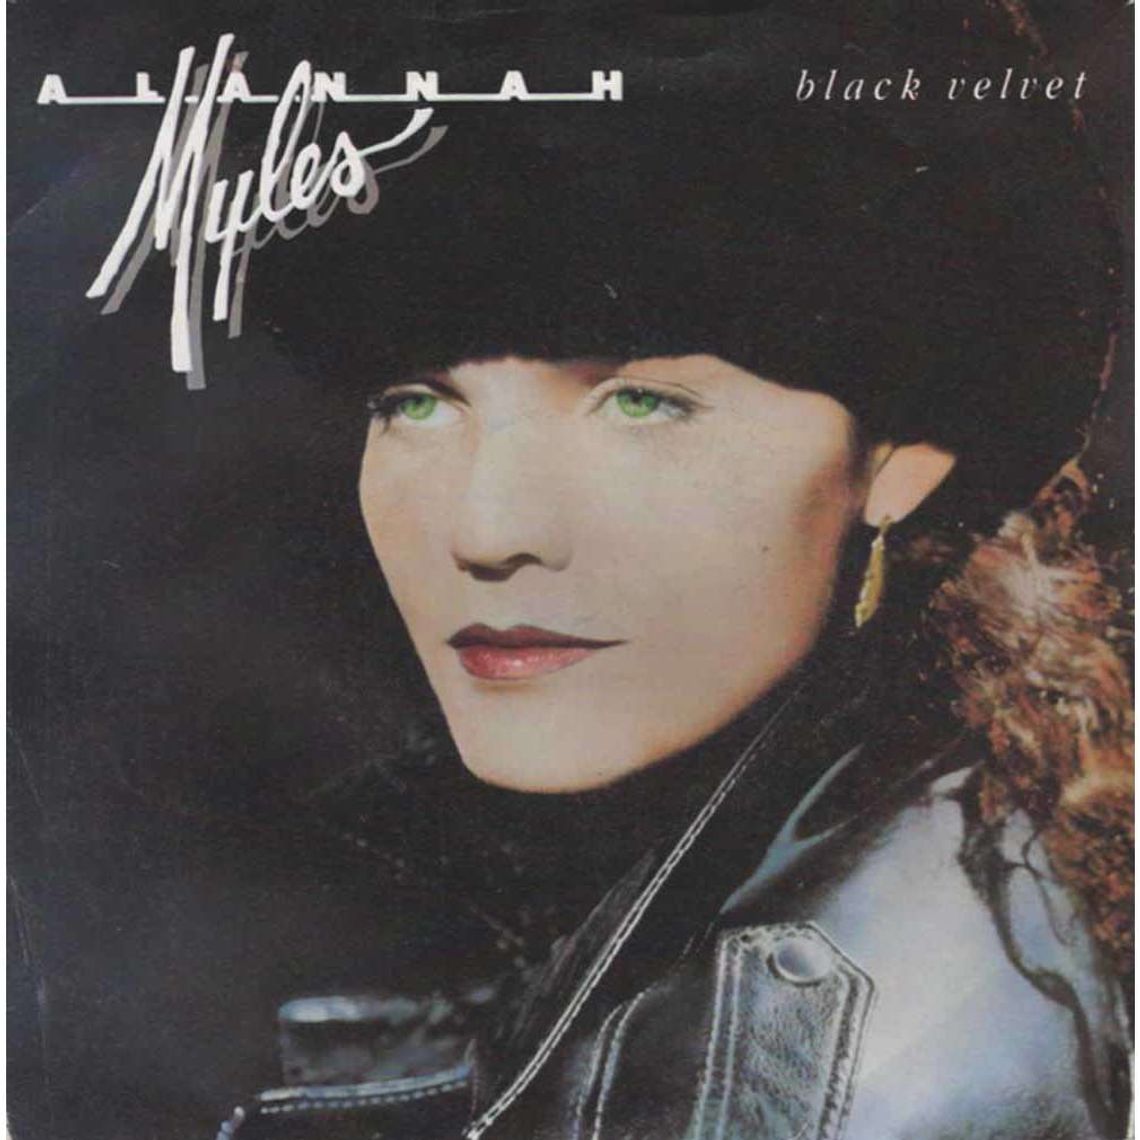 Alannah Myles "Black velvet"